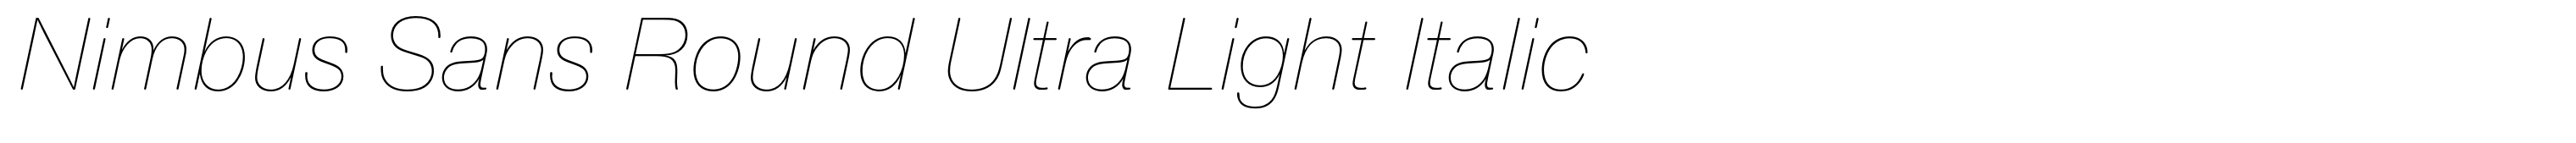 Nimbus Sans Round Ultra Light Italic